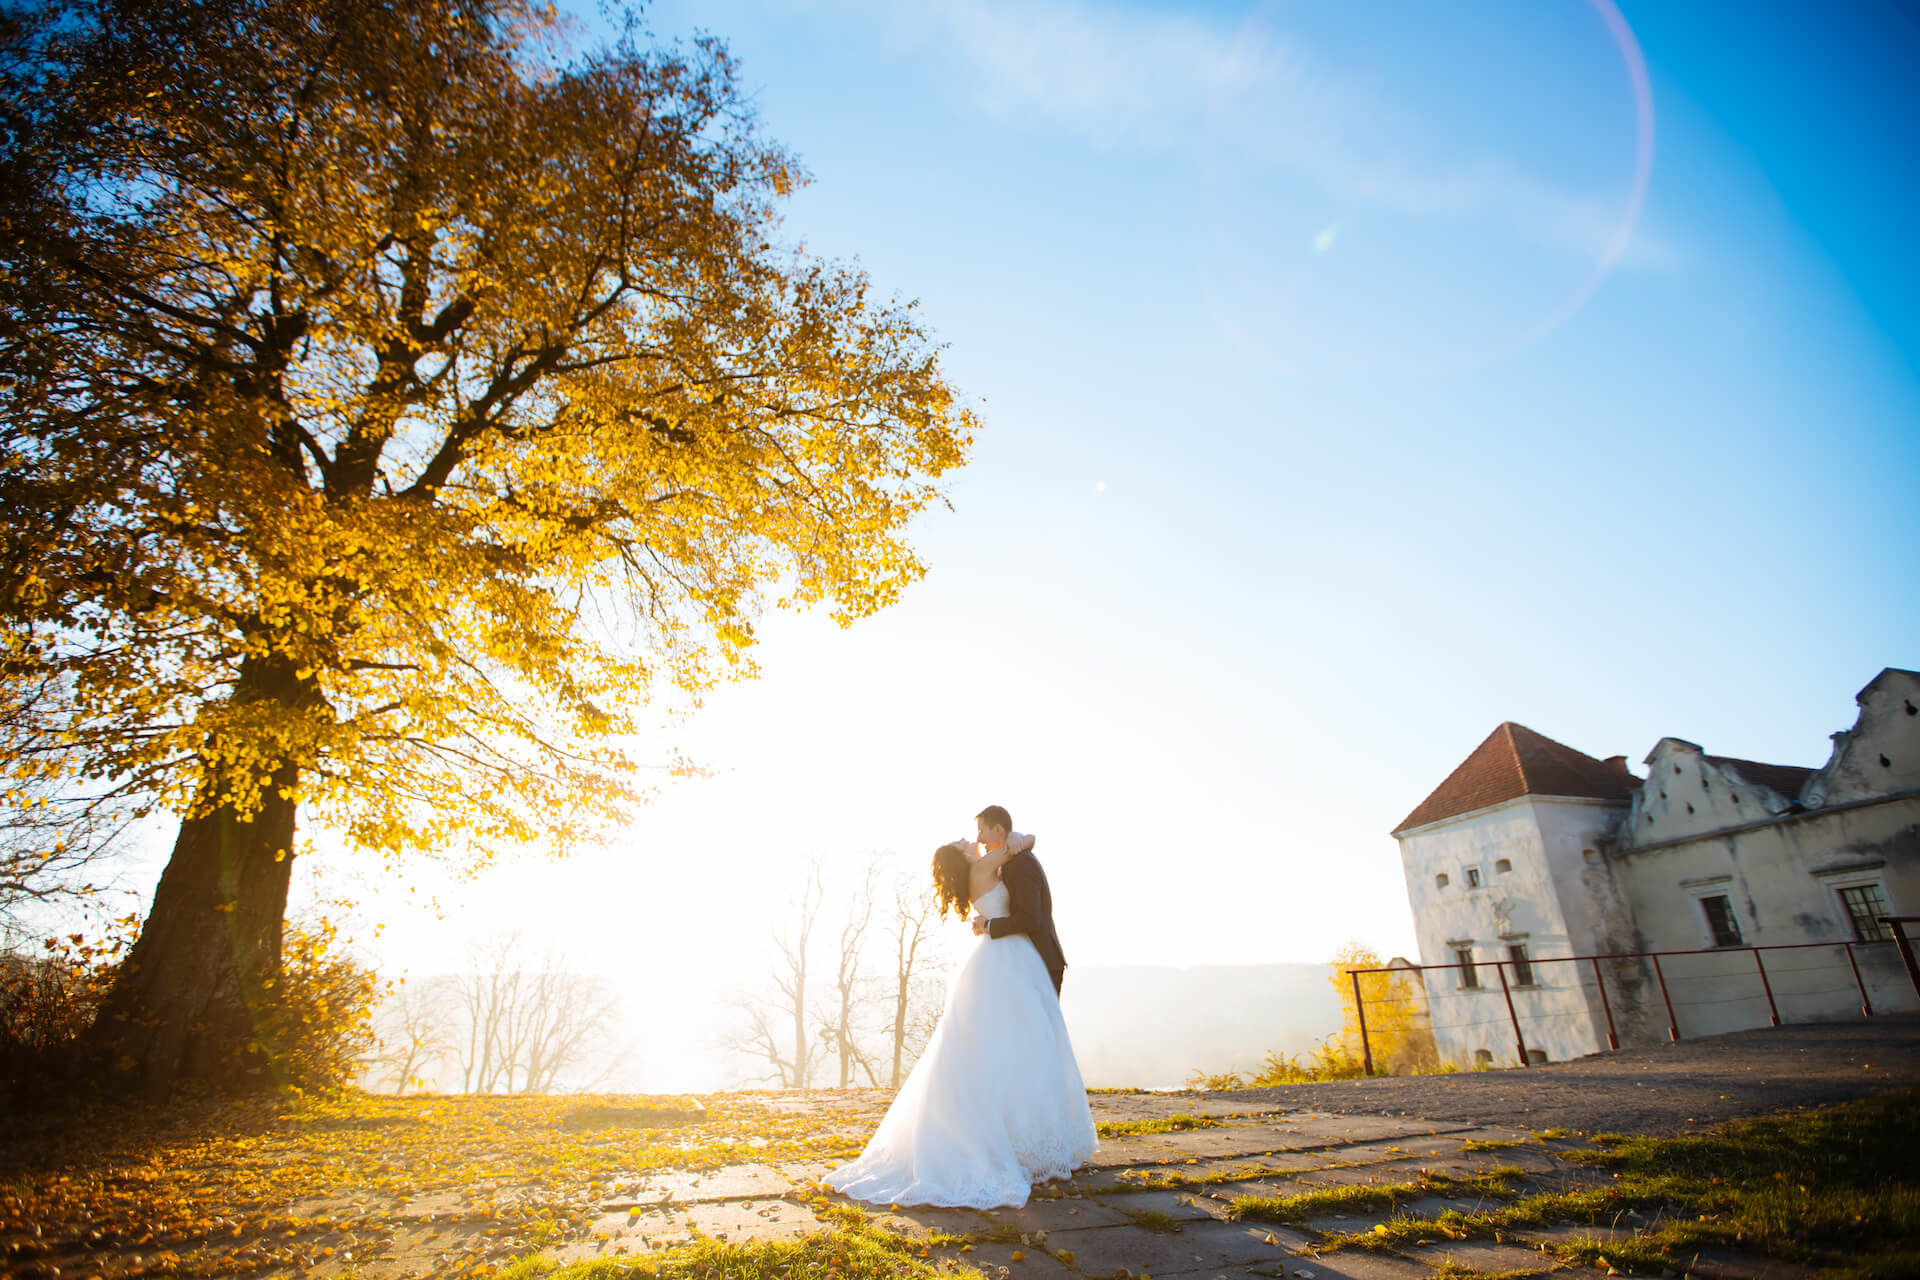 Podzimní svatba zalitá sluncem pod velkým stromem